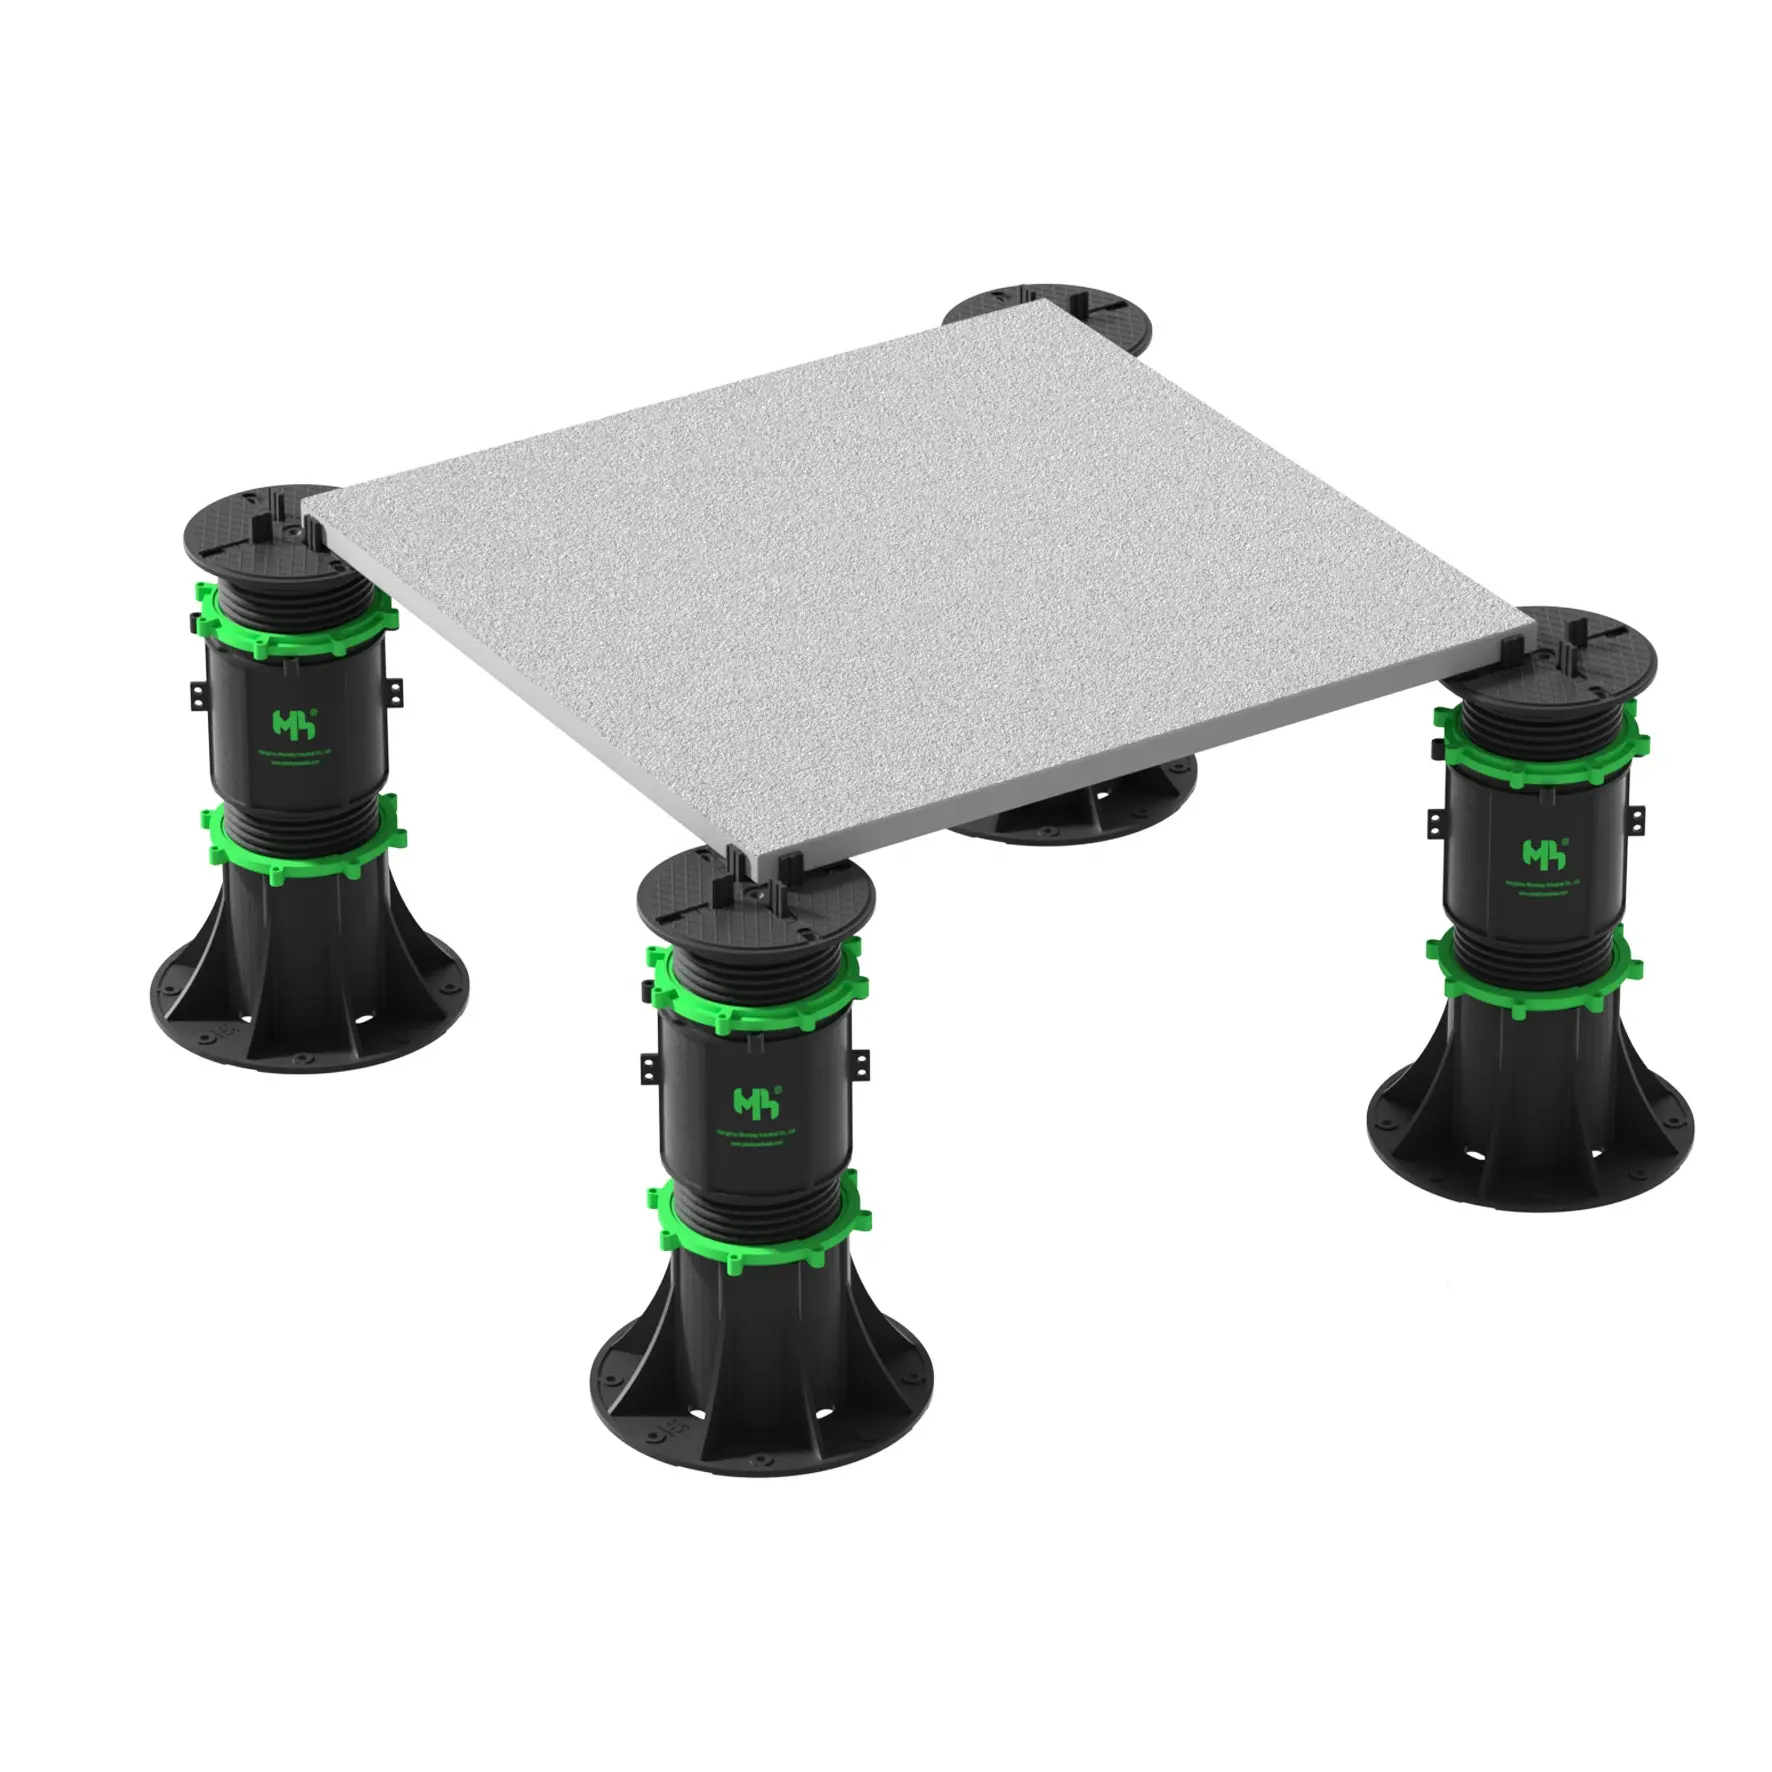 調節可能な頑丈な伸縮サポート台座プラスチックネジジャックプラスチック舗装床台座